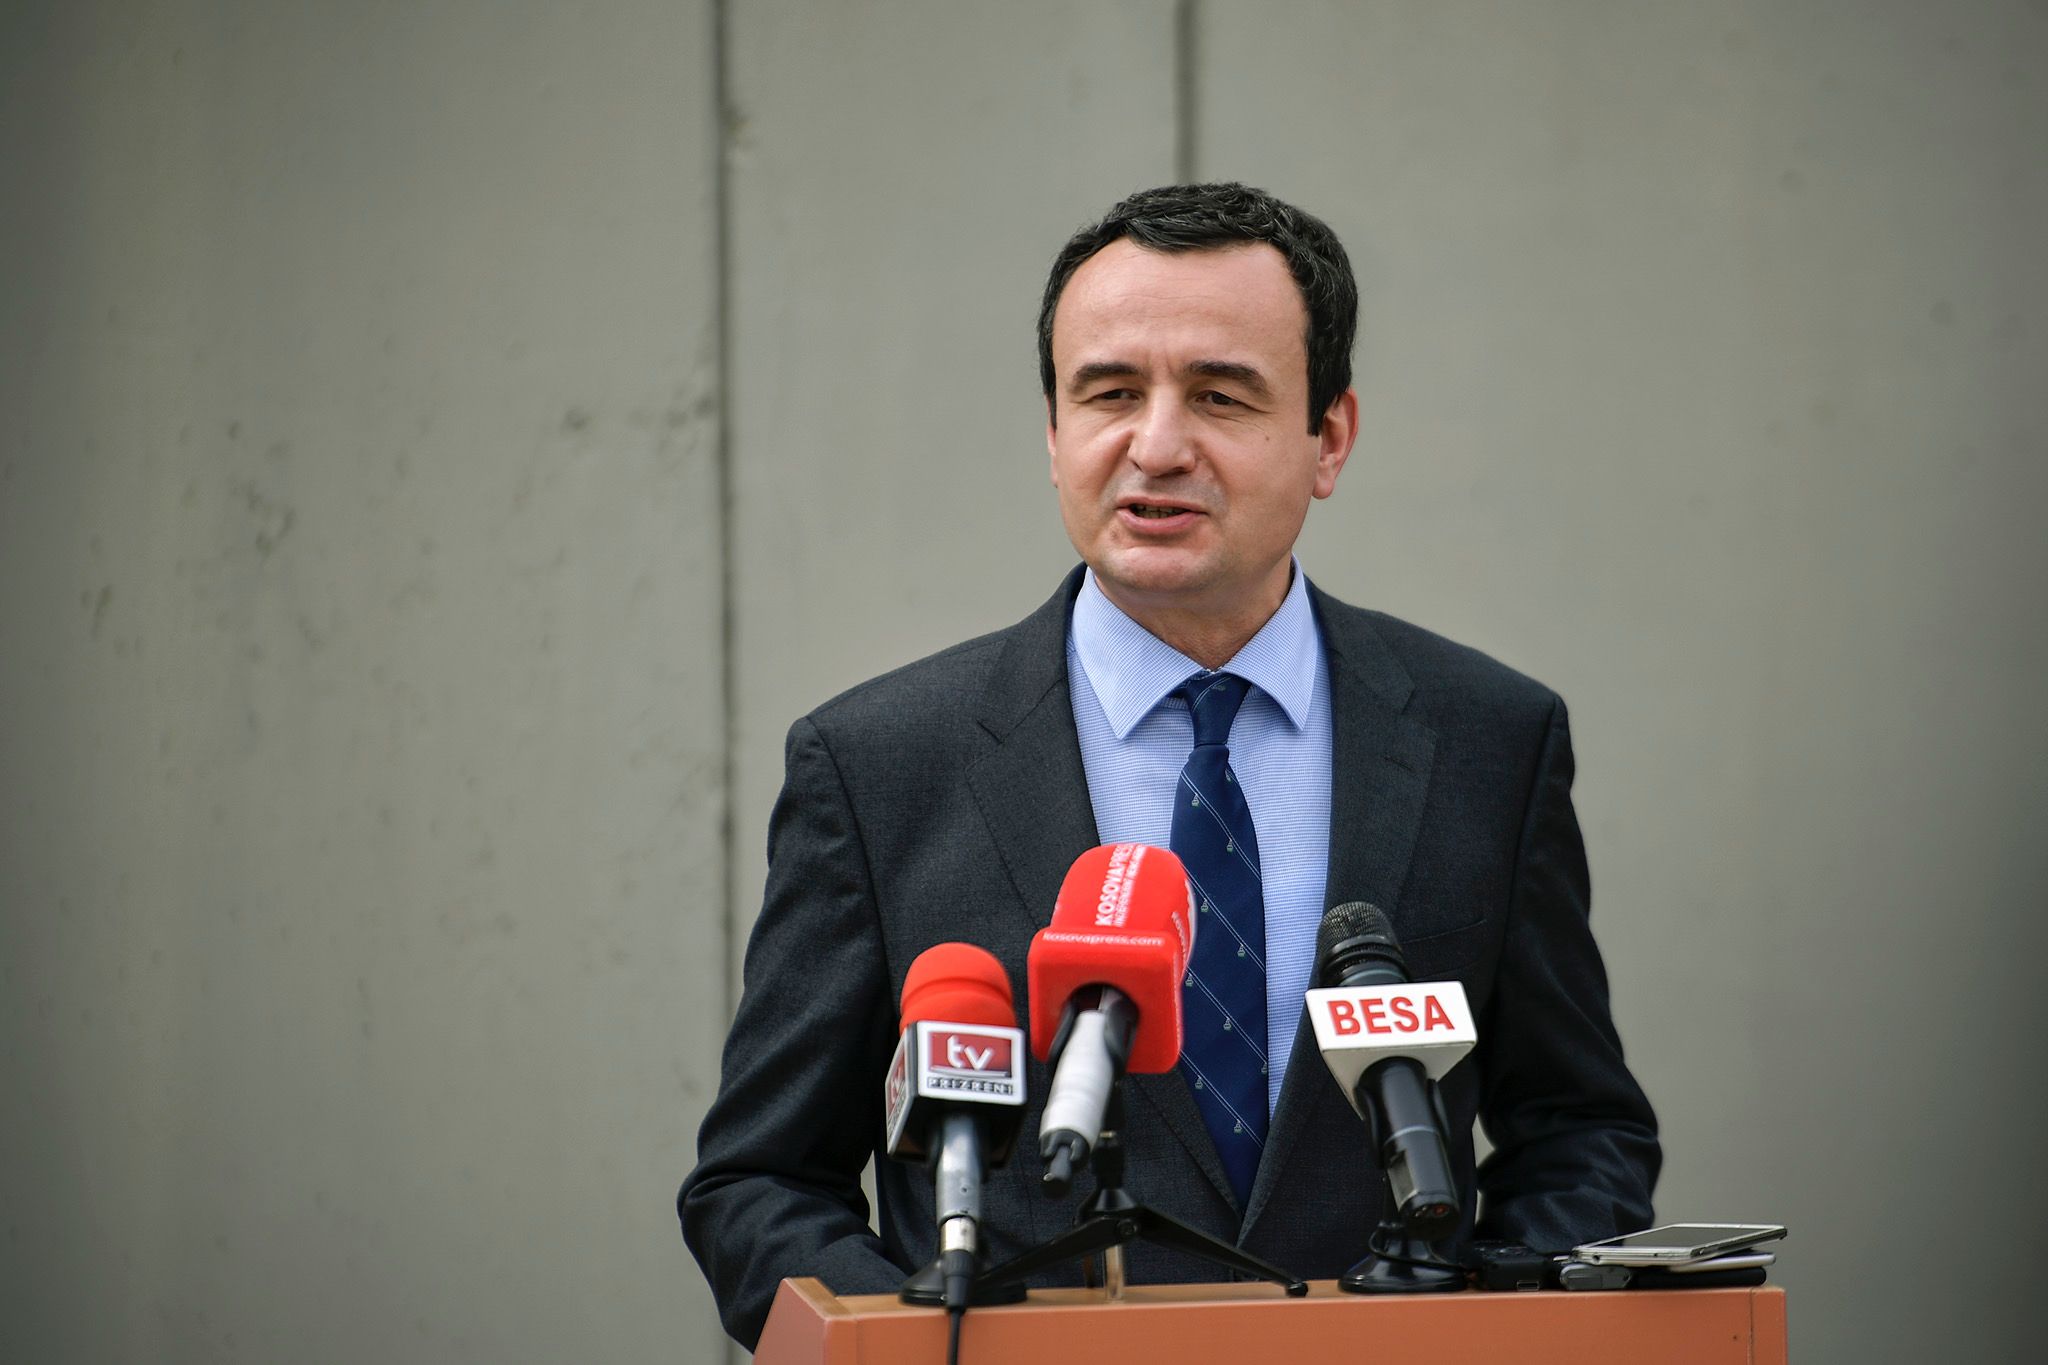 Kryeministri Kurti sot do të vizitojë Prizrenin